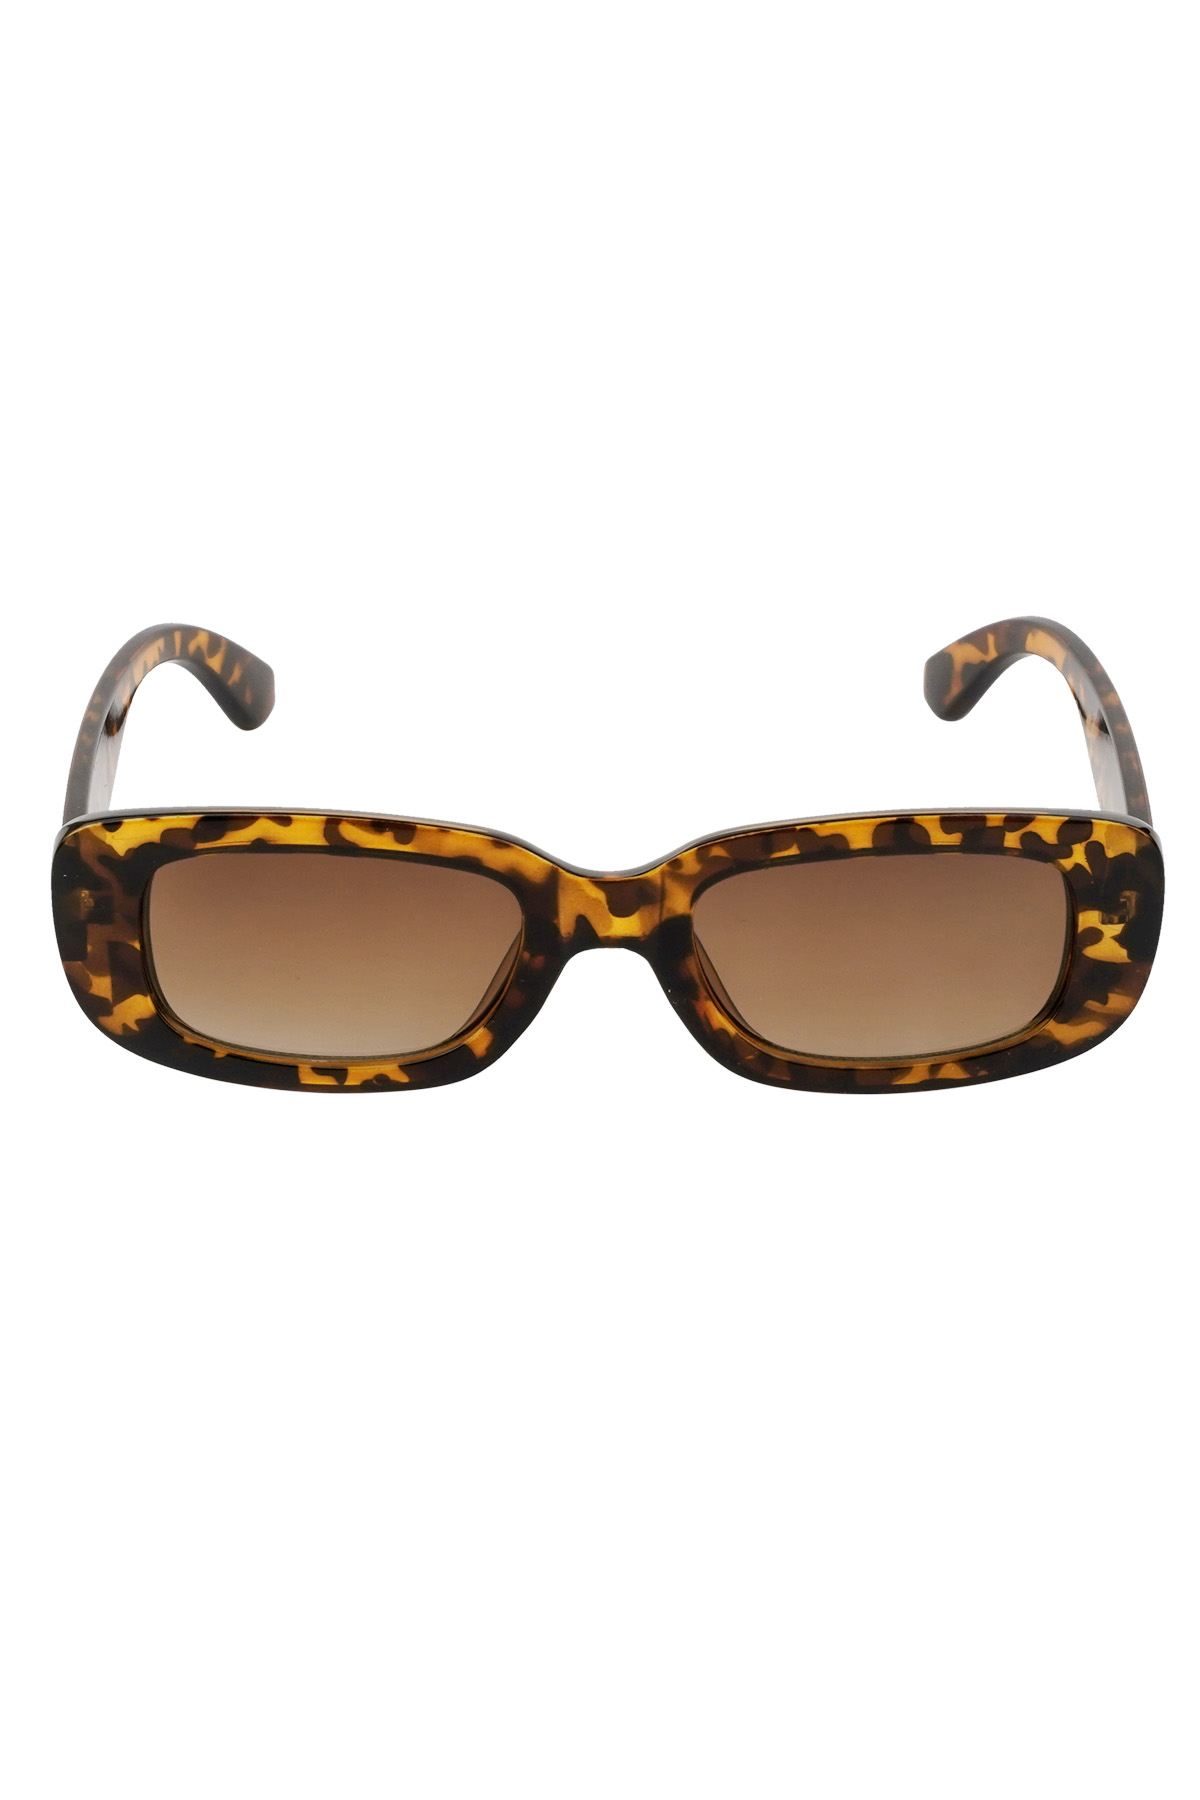 Simple retro sunglasses - brown Picture5